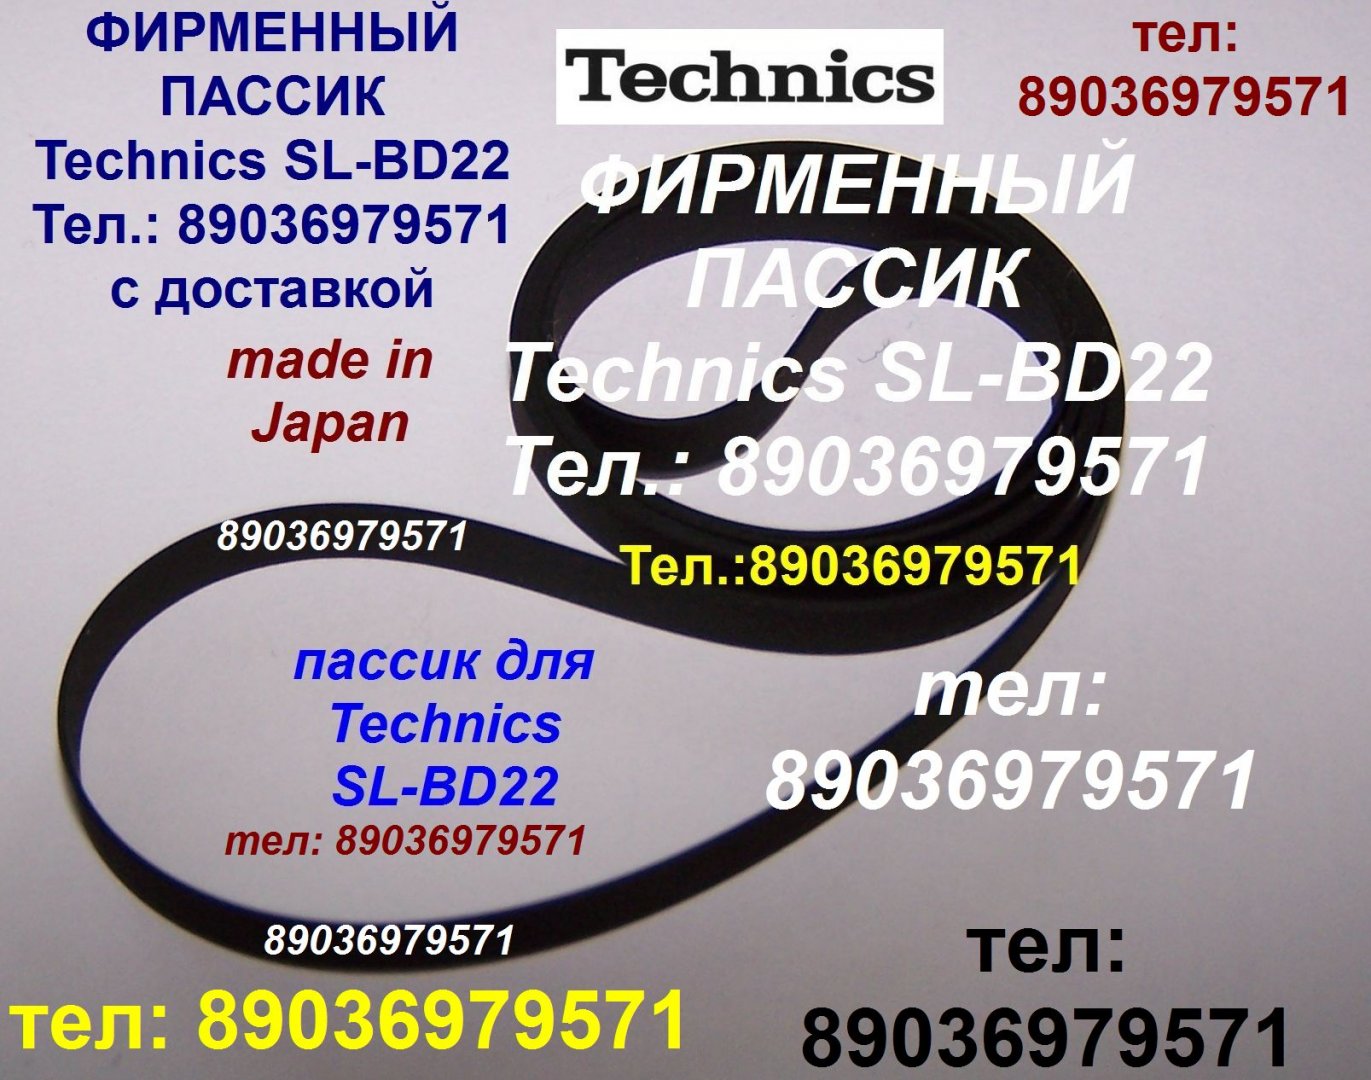 Продам в городе Москва, Тел, : 89036979571, Made in Japan новый пассик Technics SL-BD22